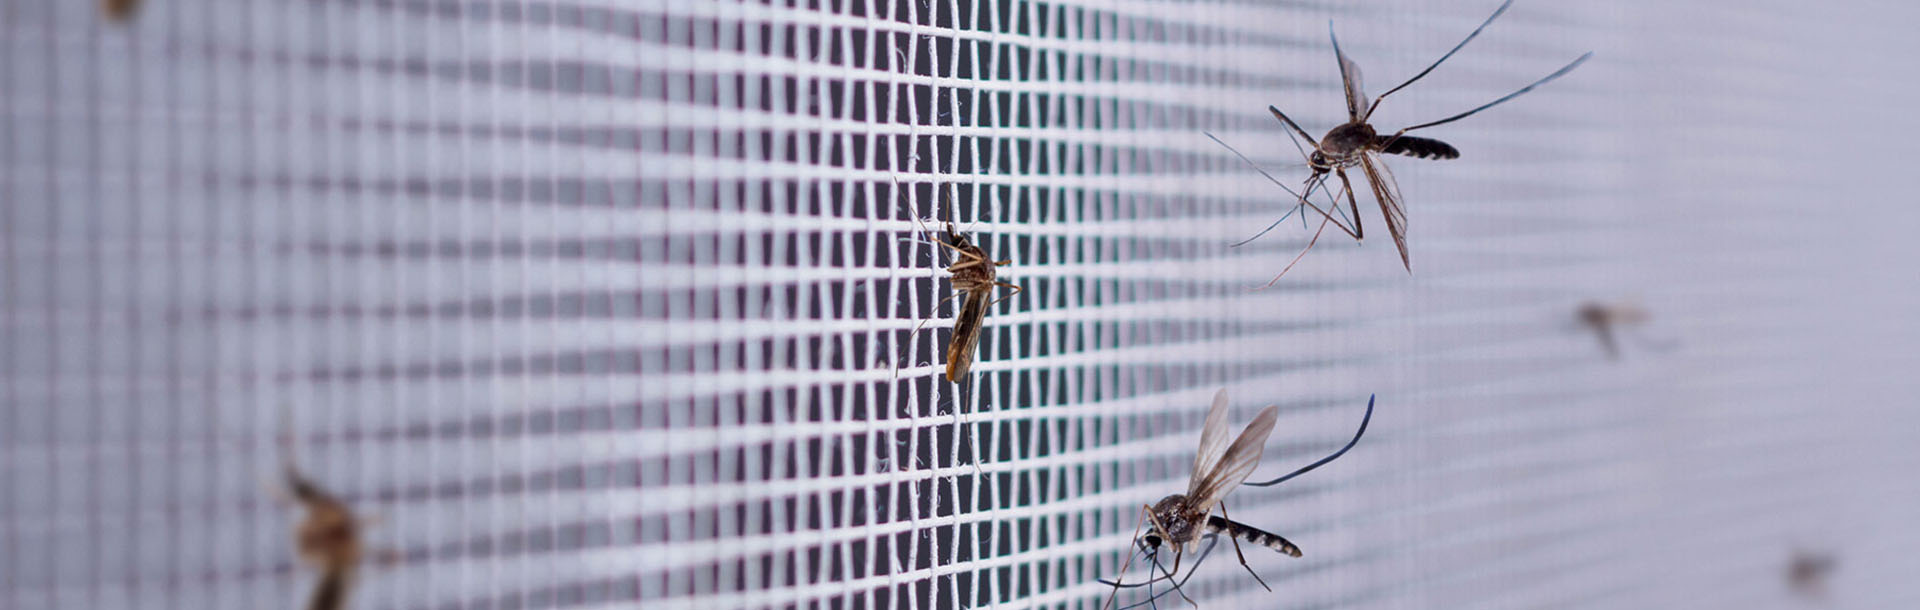 Zanzare sulla zanzariera della finestra